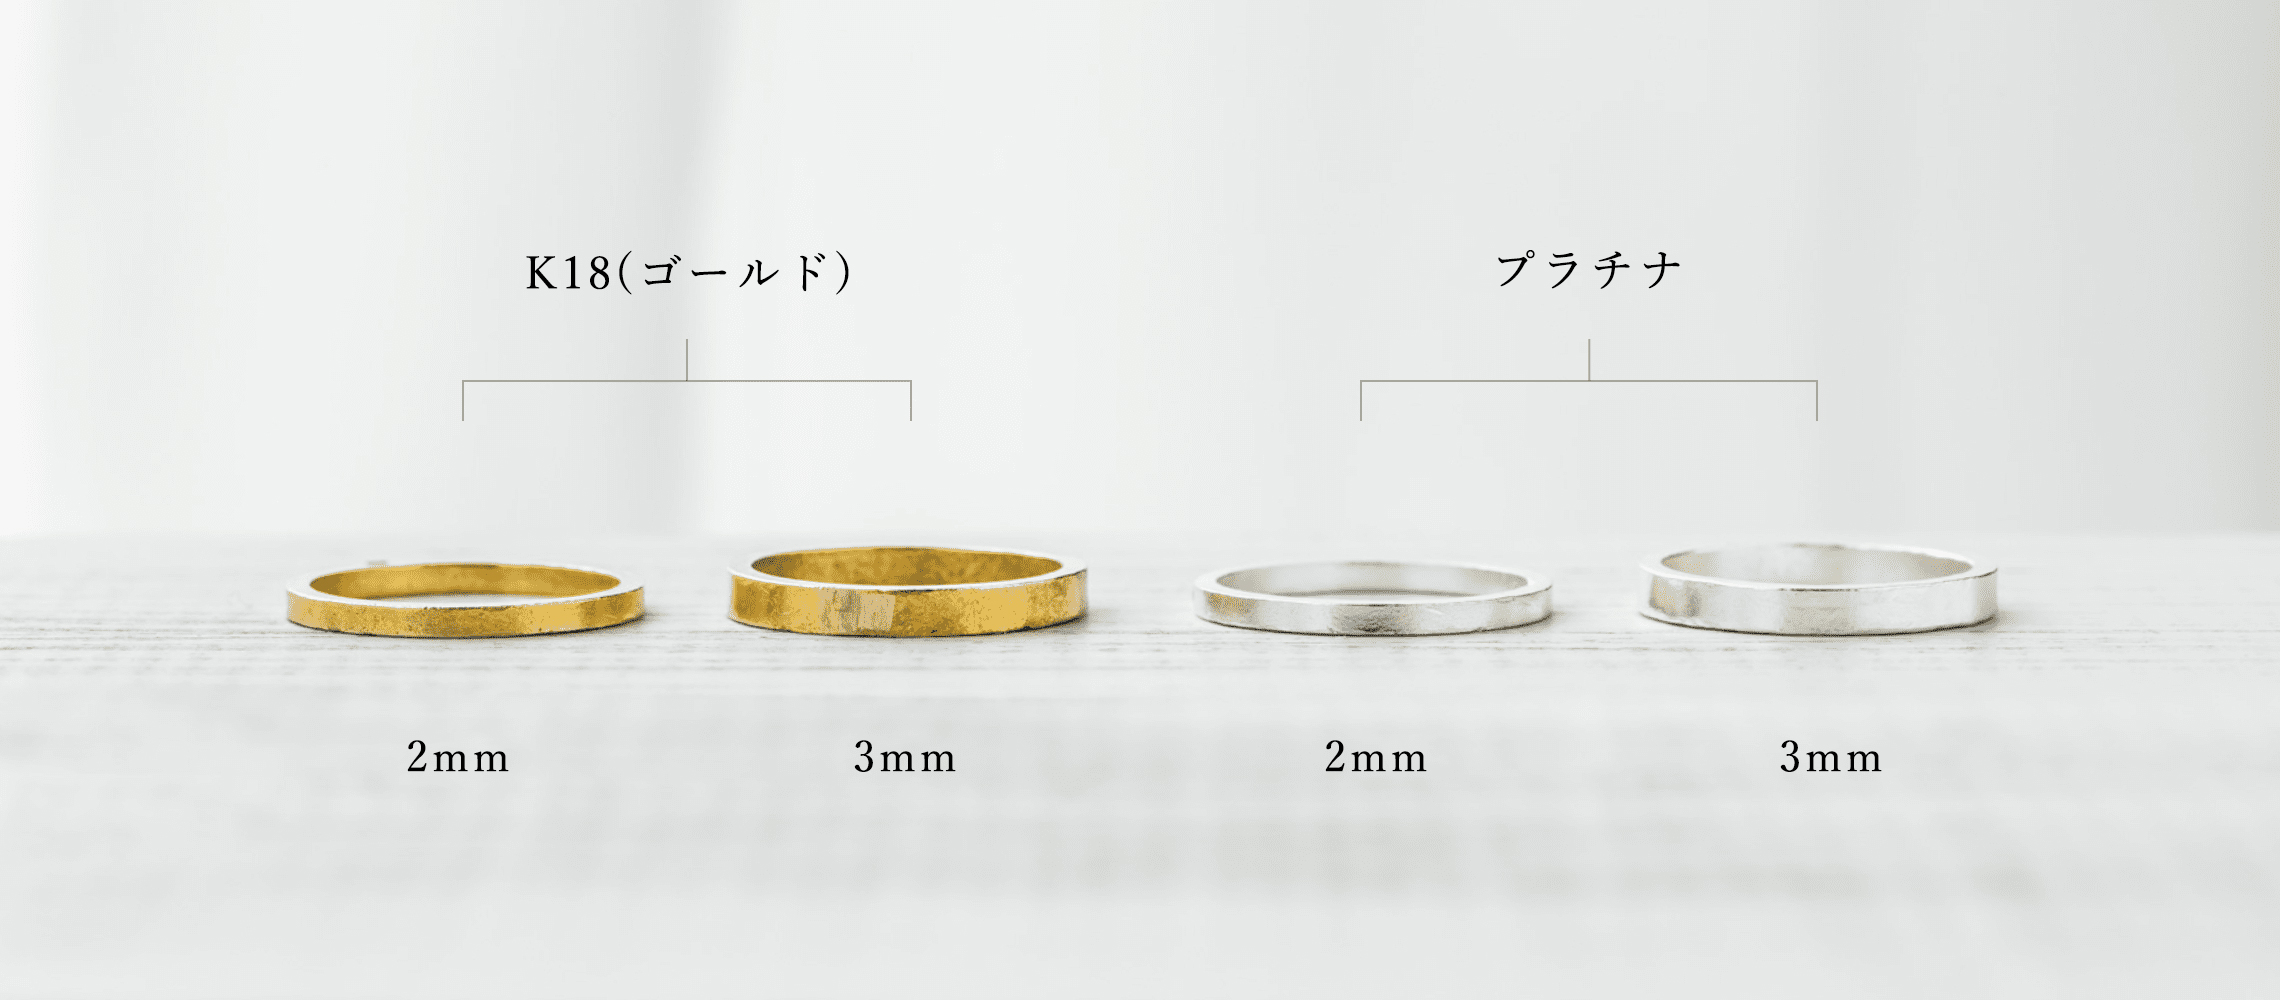 リング幅は2mmと3mmから、カラー（素材）はK18(ゴールド）またはプラチナから